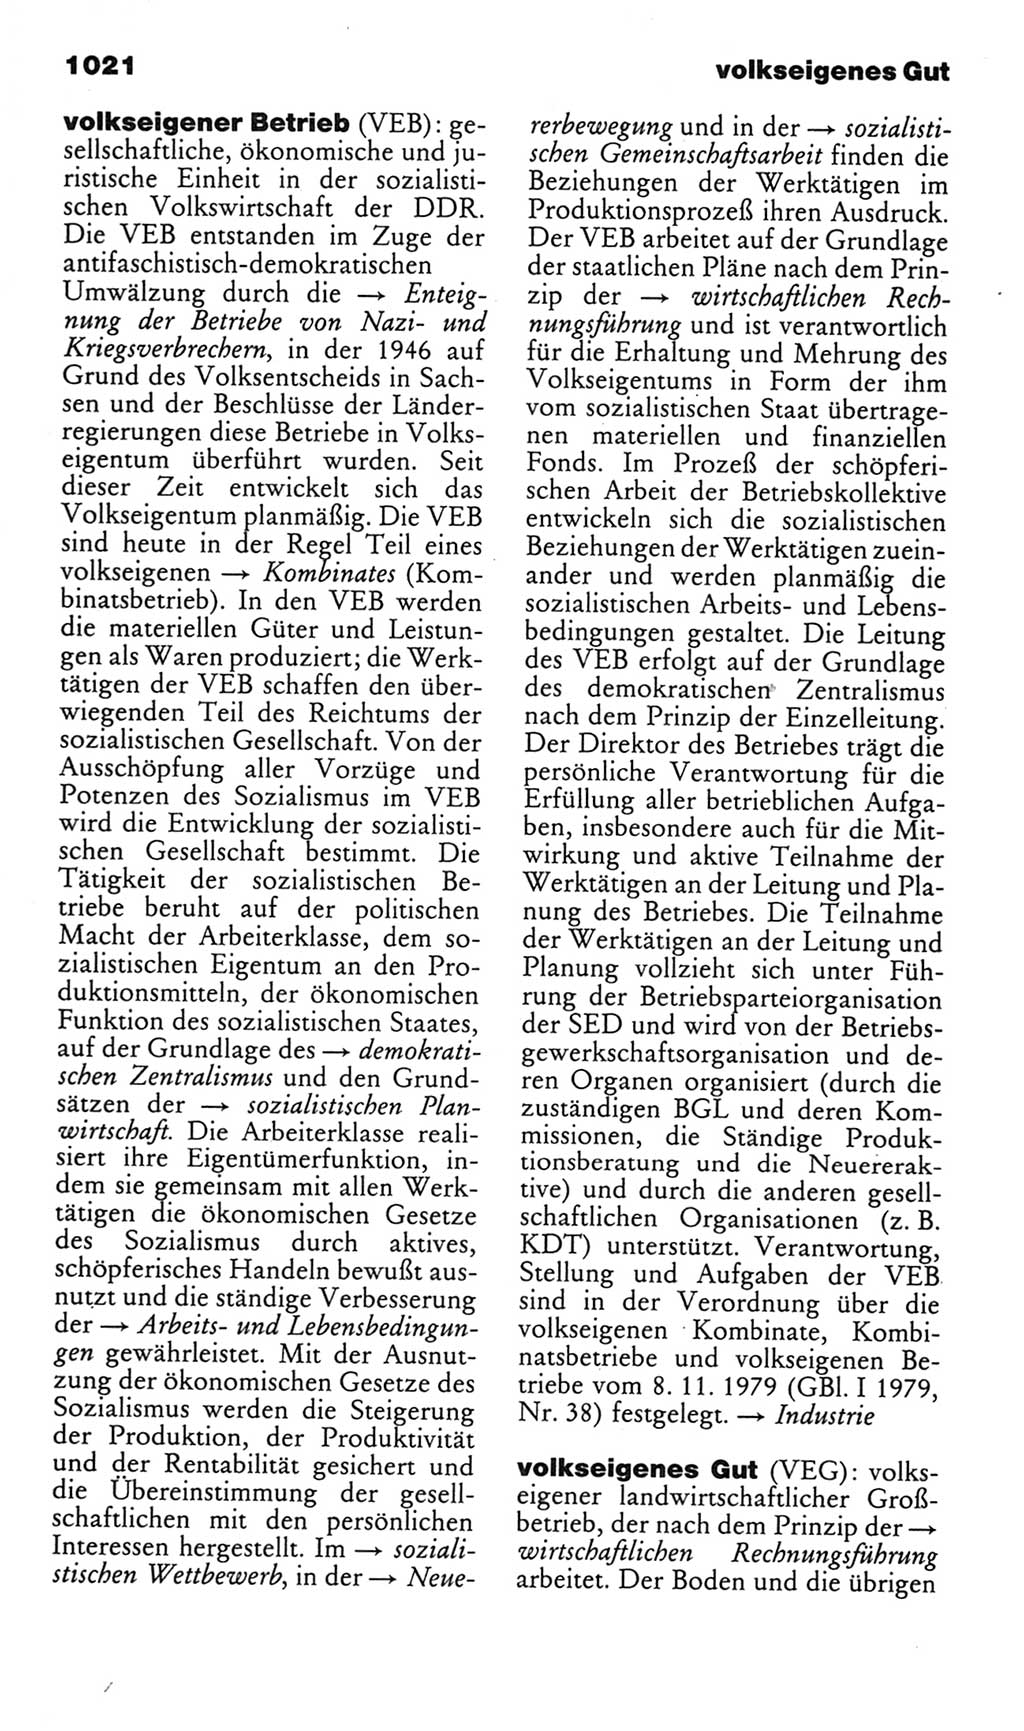 Kleines politisches Wörterbuch [Deutsche Demokratische Republik (DDR)] 1985, Seite 1021 (Kl. pol. Wb. DDR 1985, S. 1021)